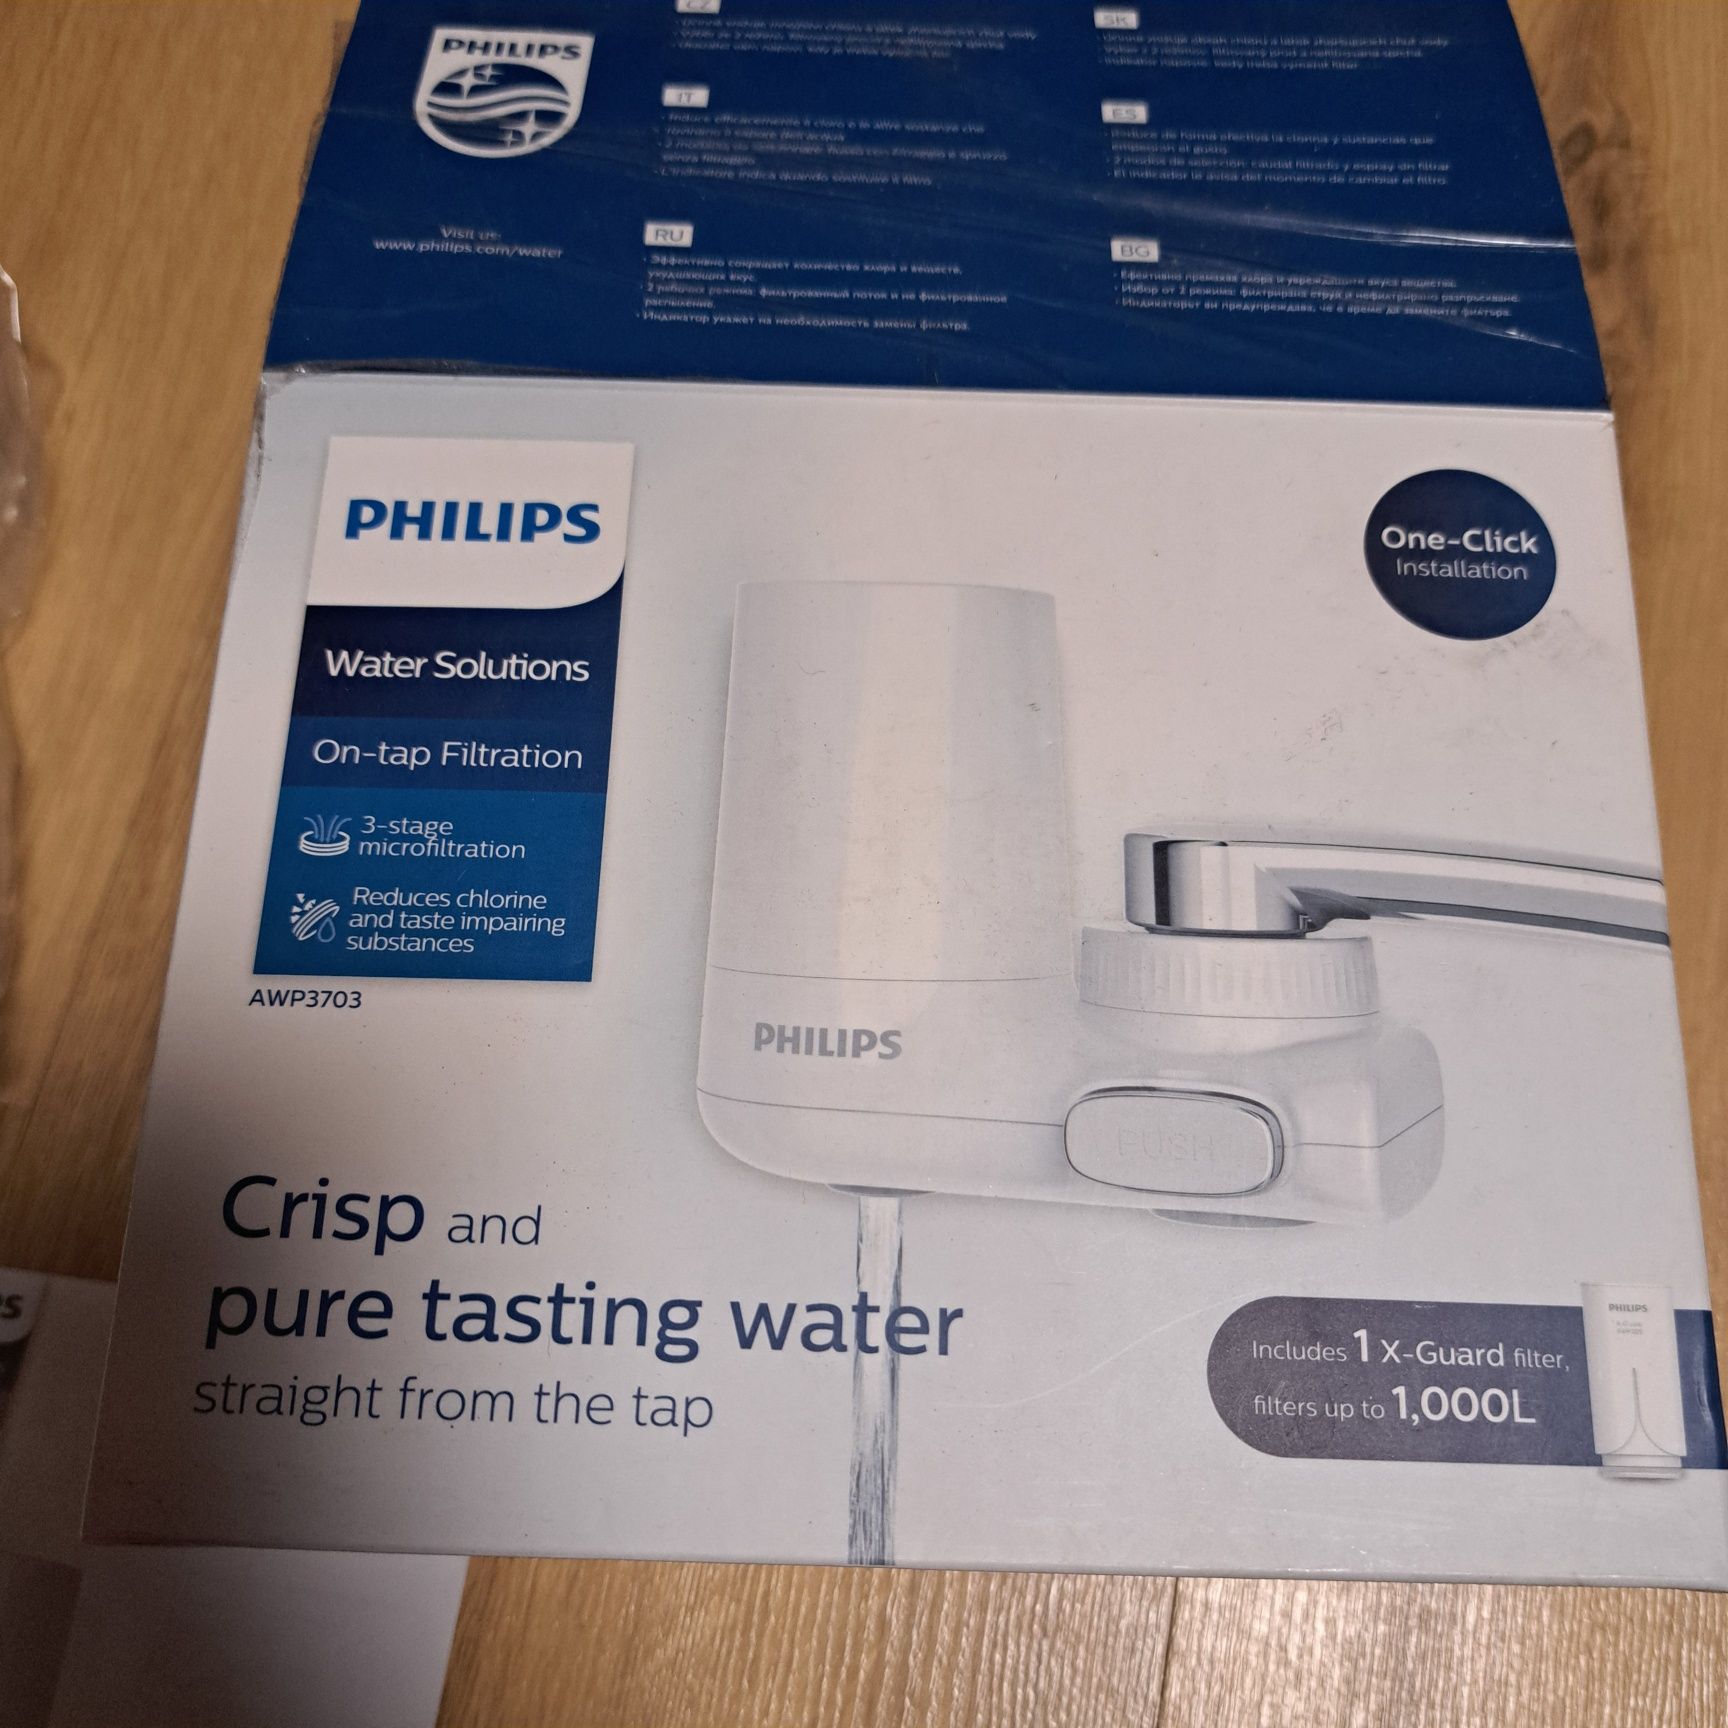 Philips filtr na kran